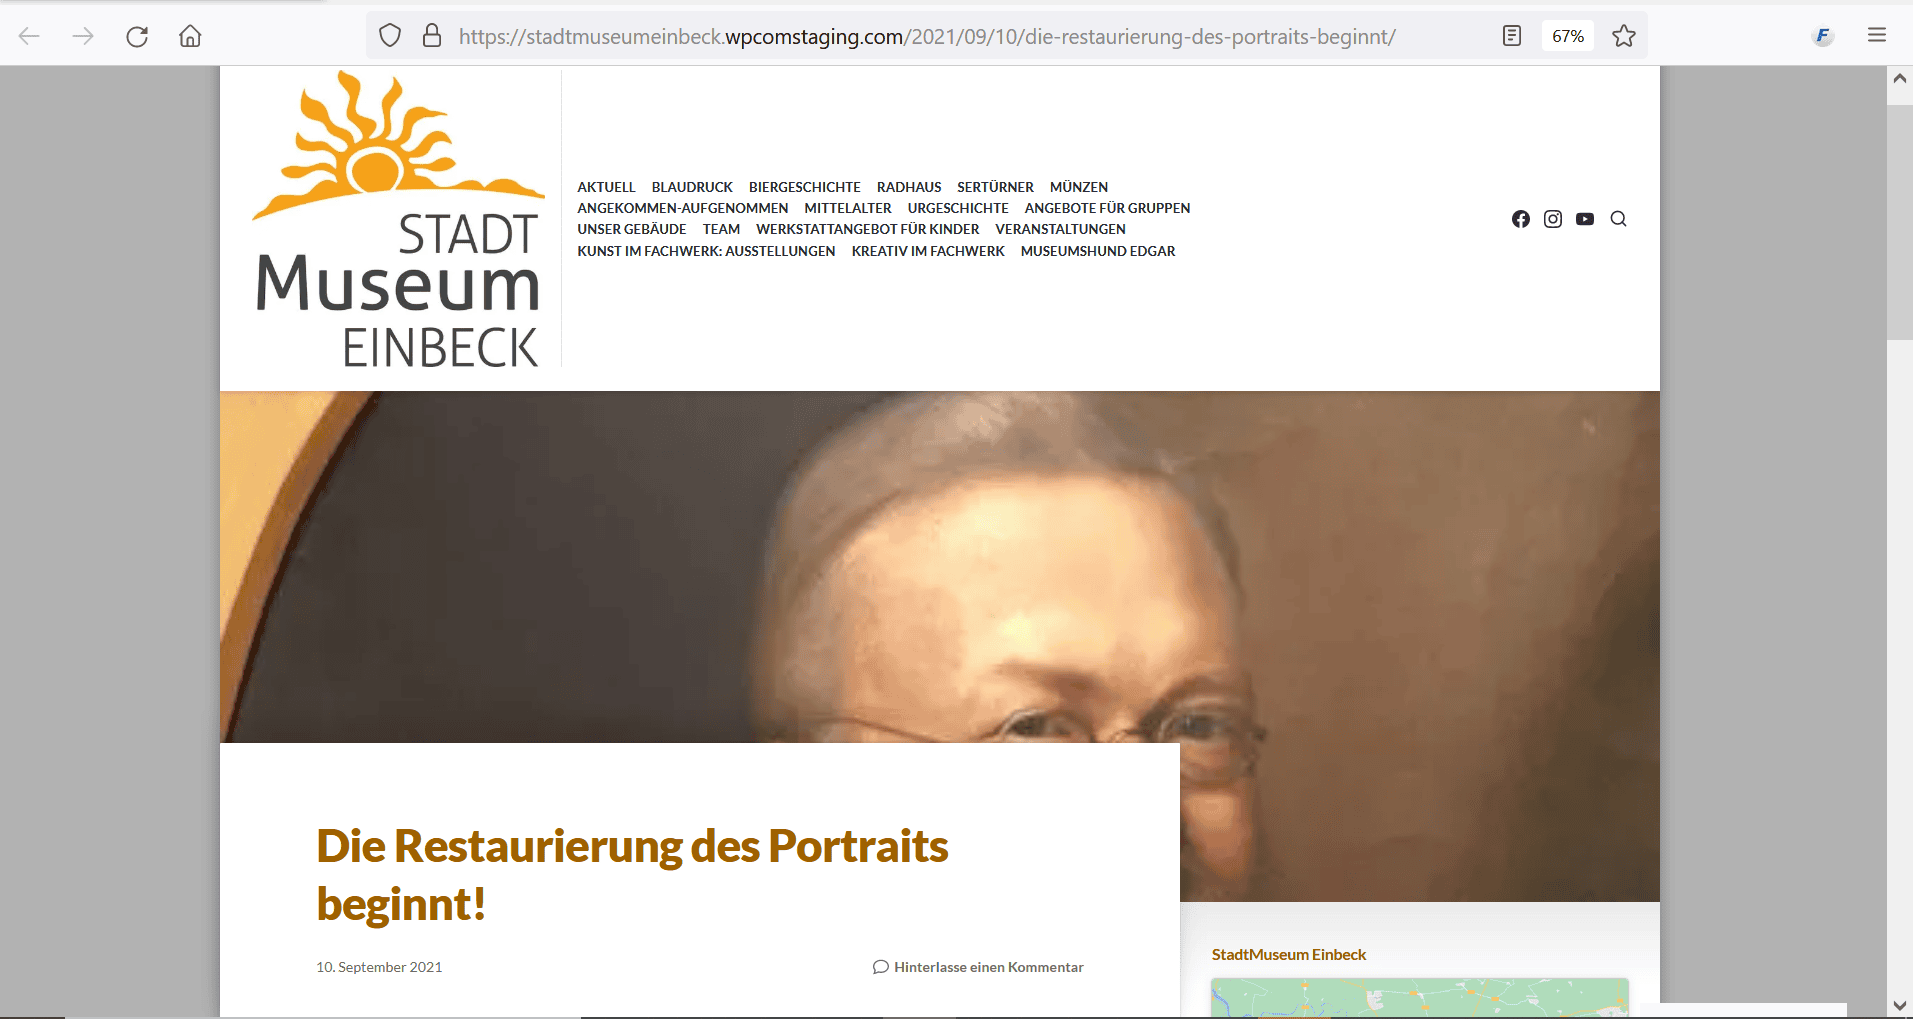 Ein Porträt wird restauriert. © StadtMuseumEinbeck